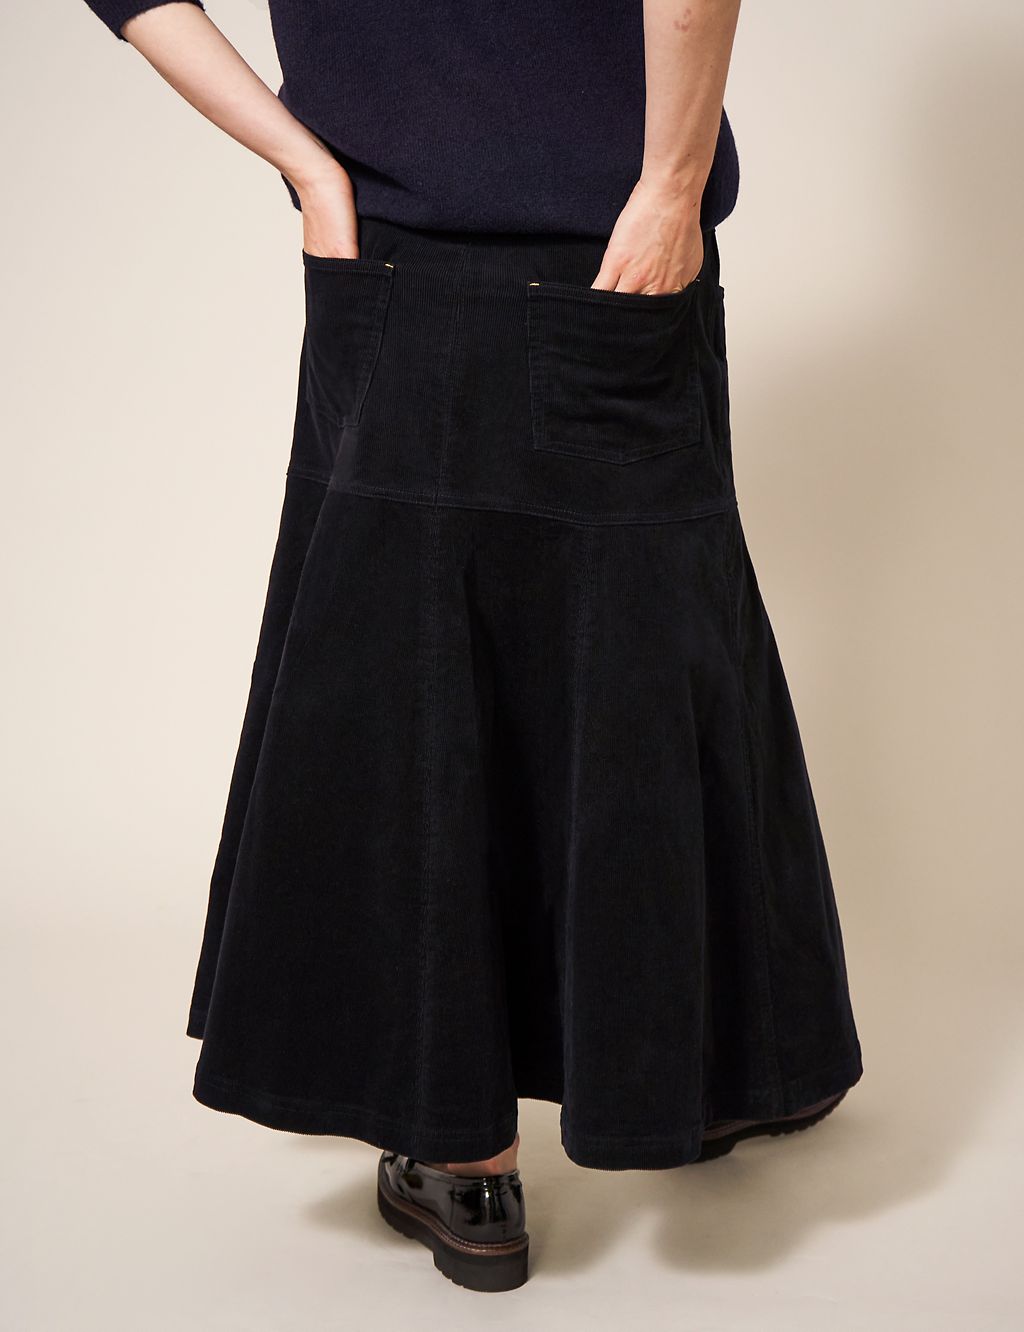 Cord Maxi A-Line Skirt | White Stuff | M&S